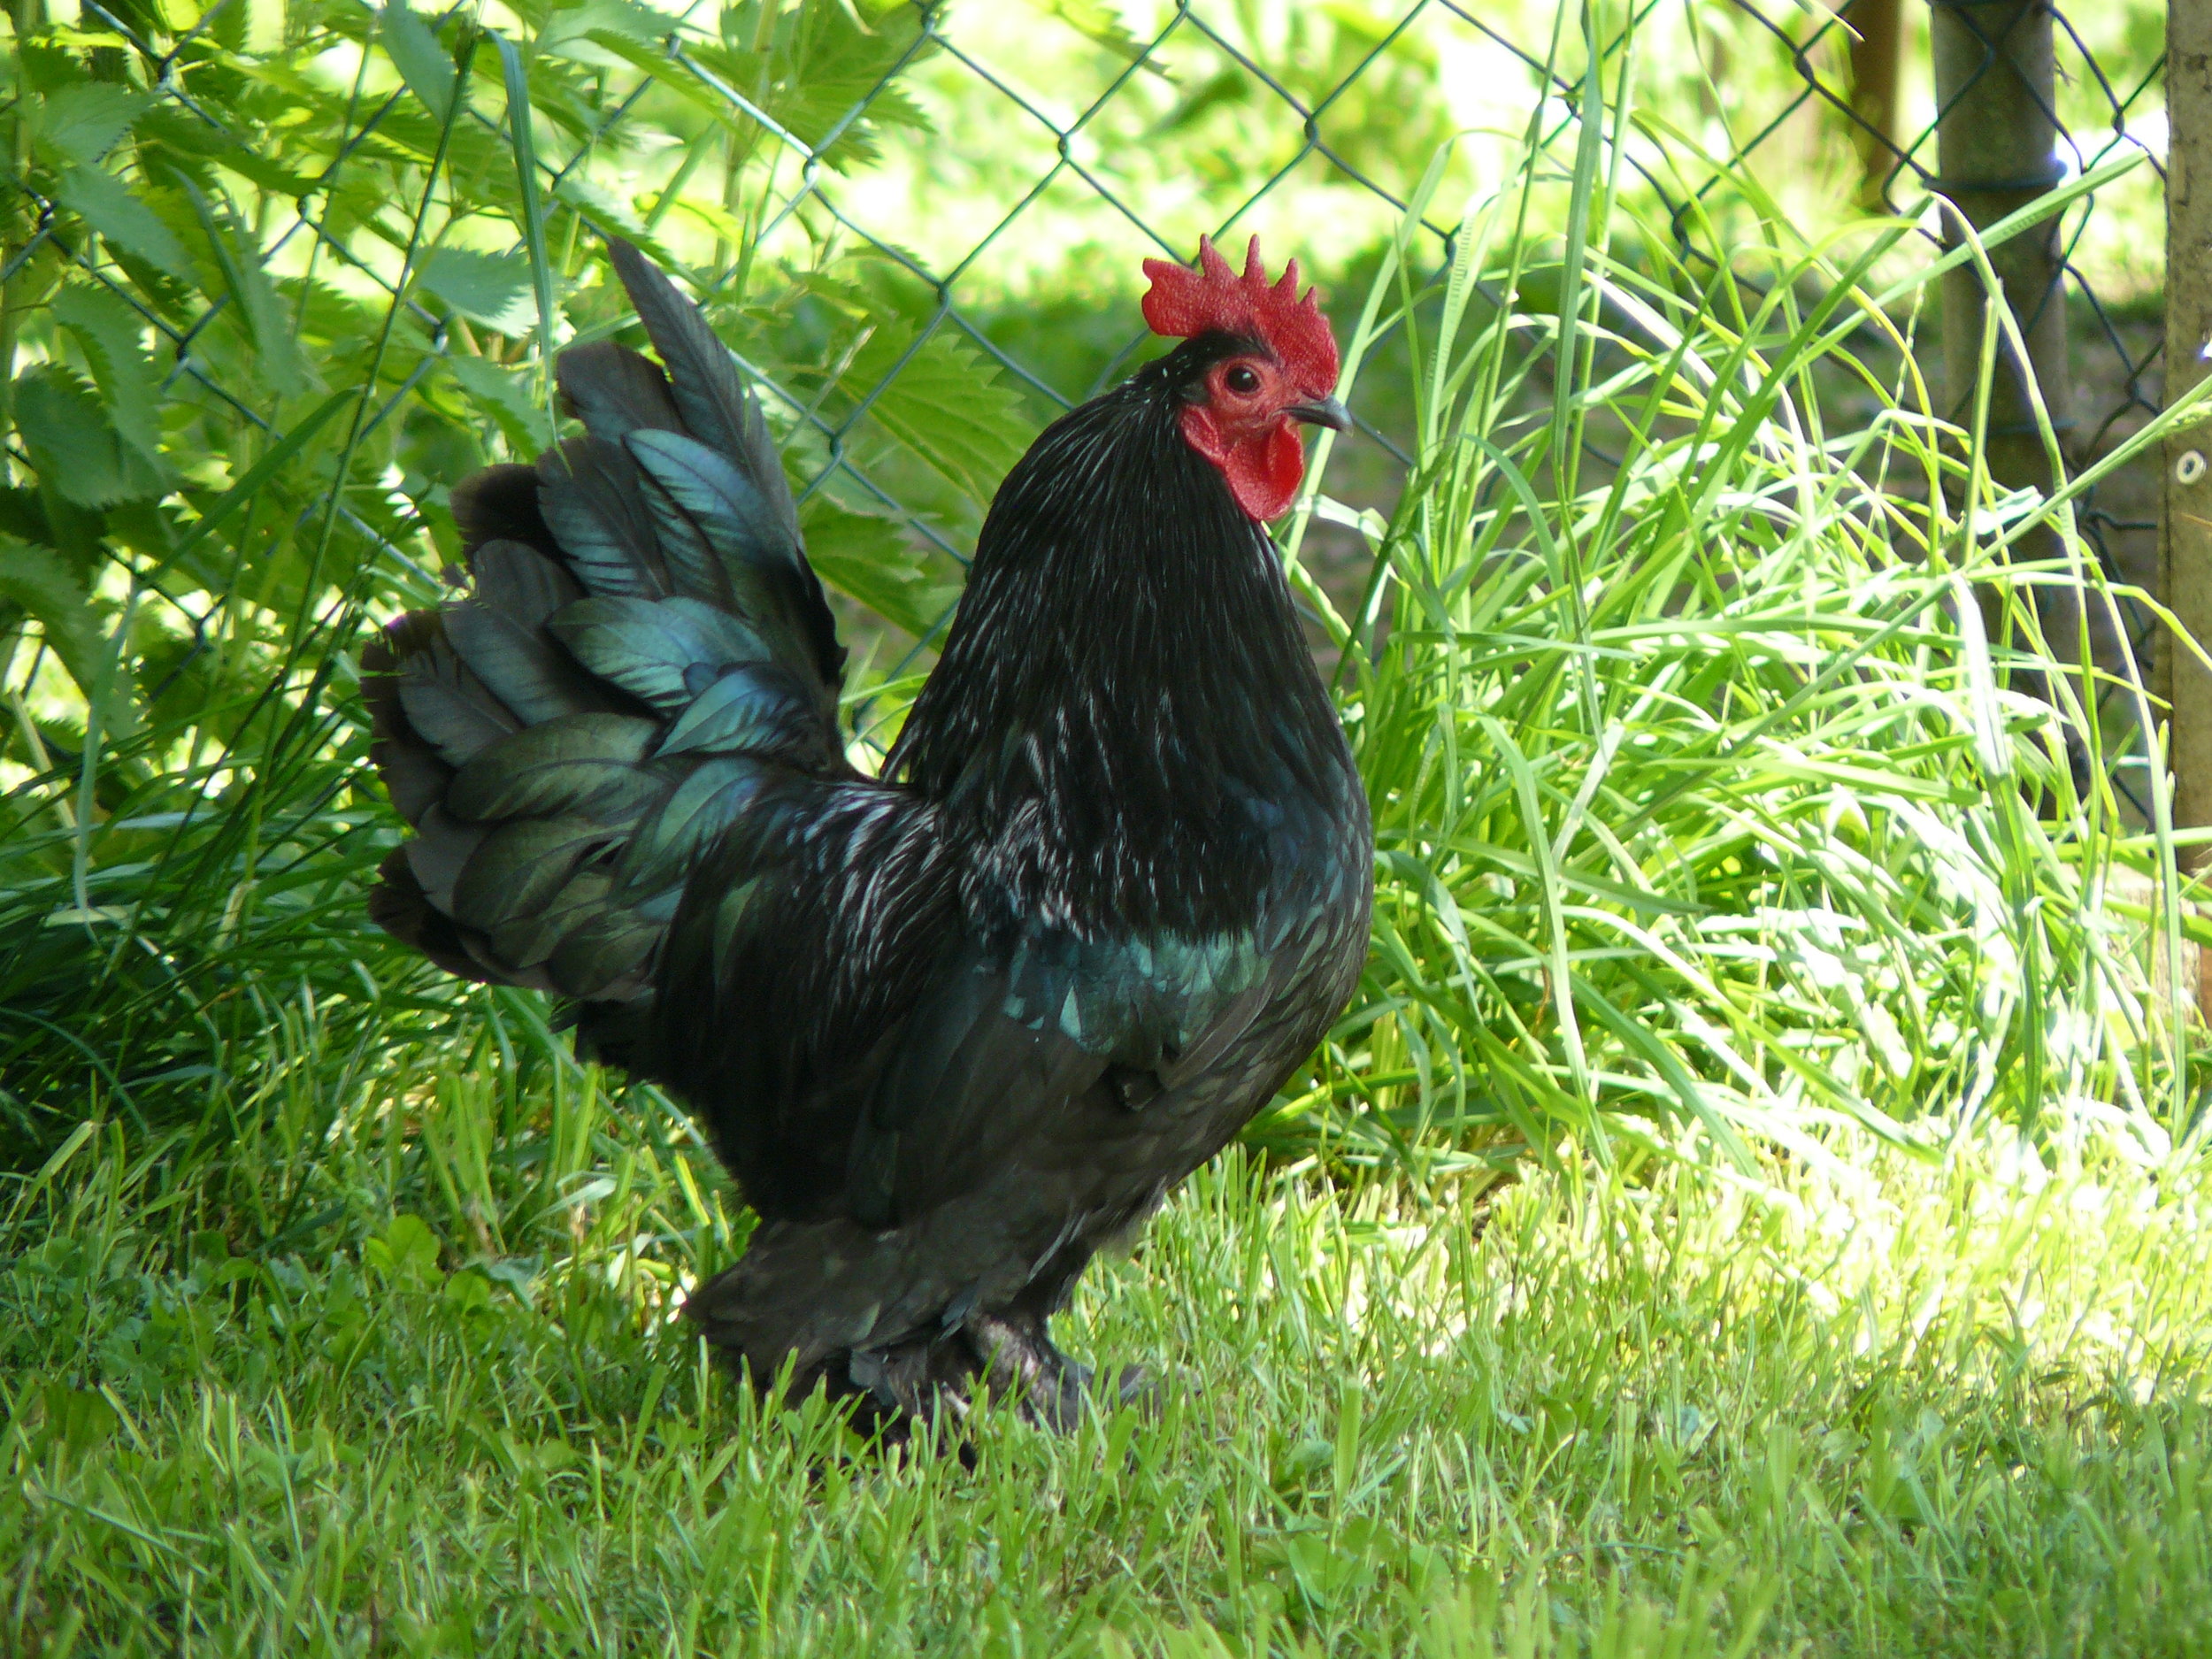 Federfüßiger Hahn, schwarz